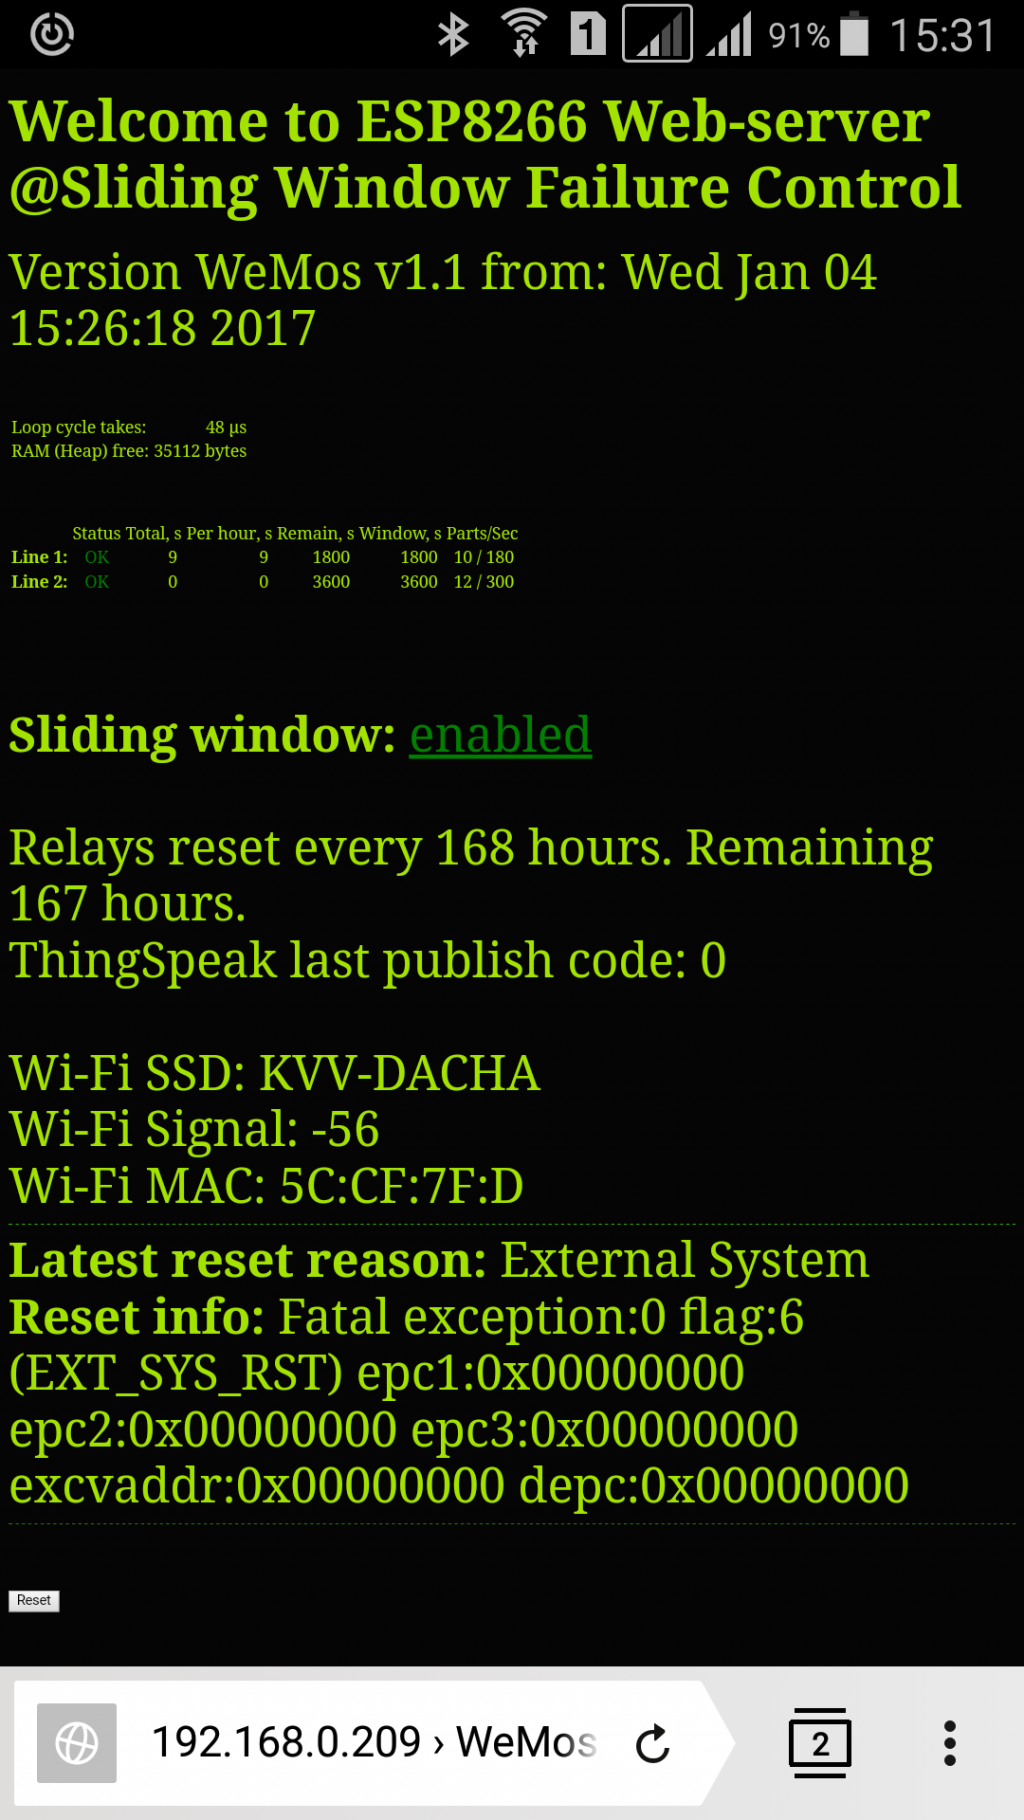 web-server, WeMos, Sliding Window Failure Control, Excehption, flag:6